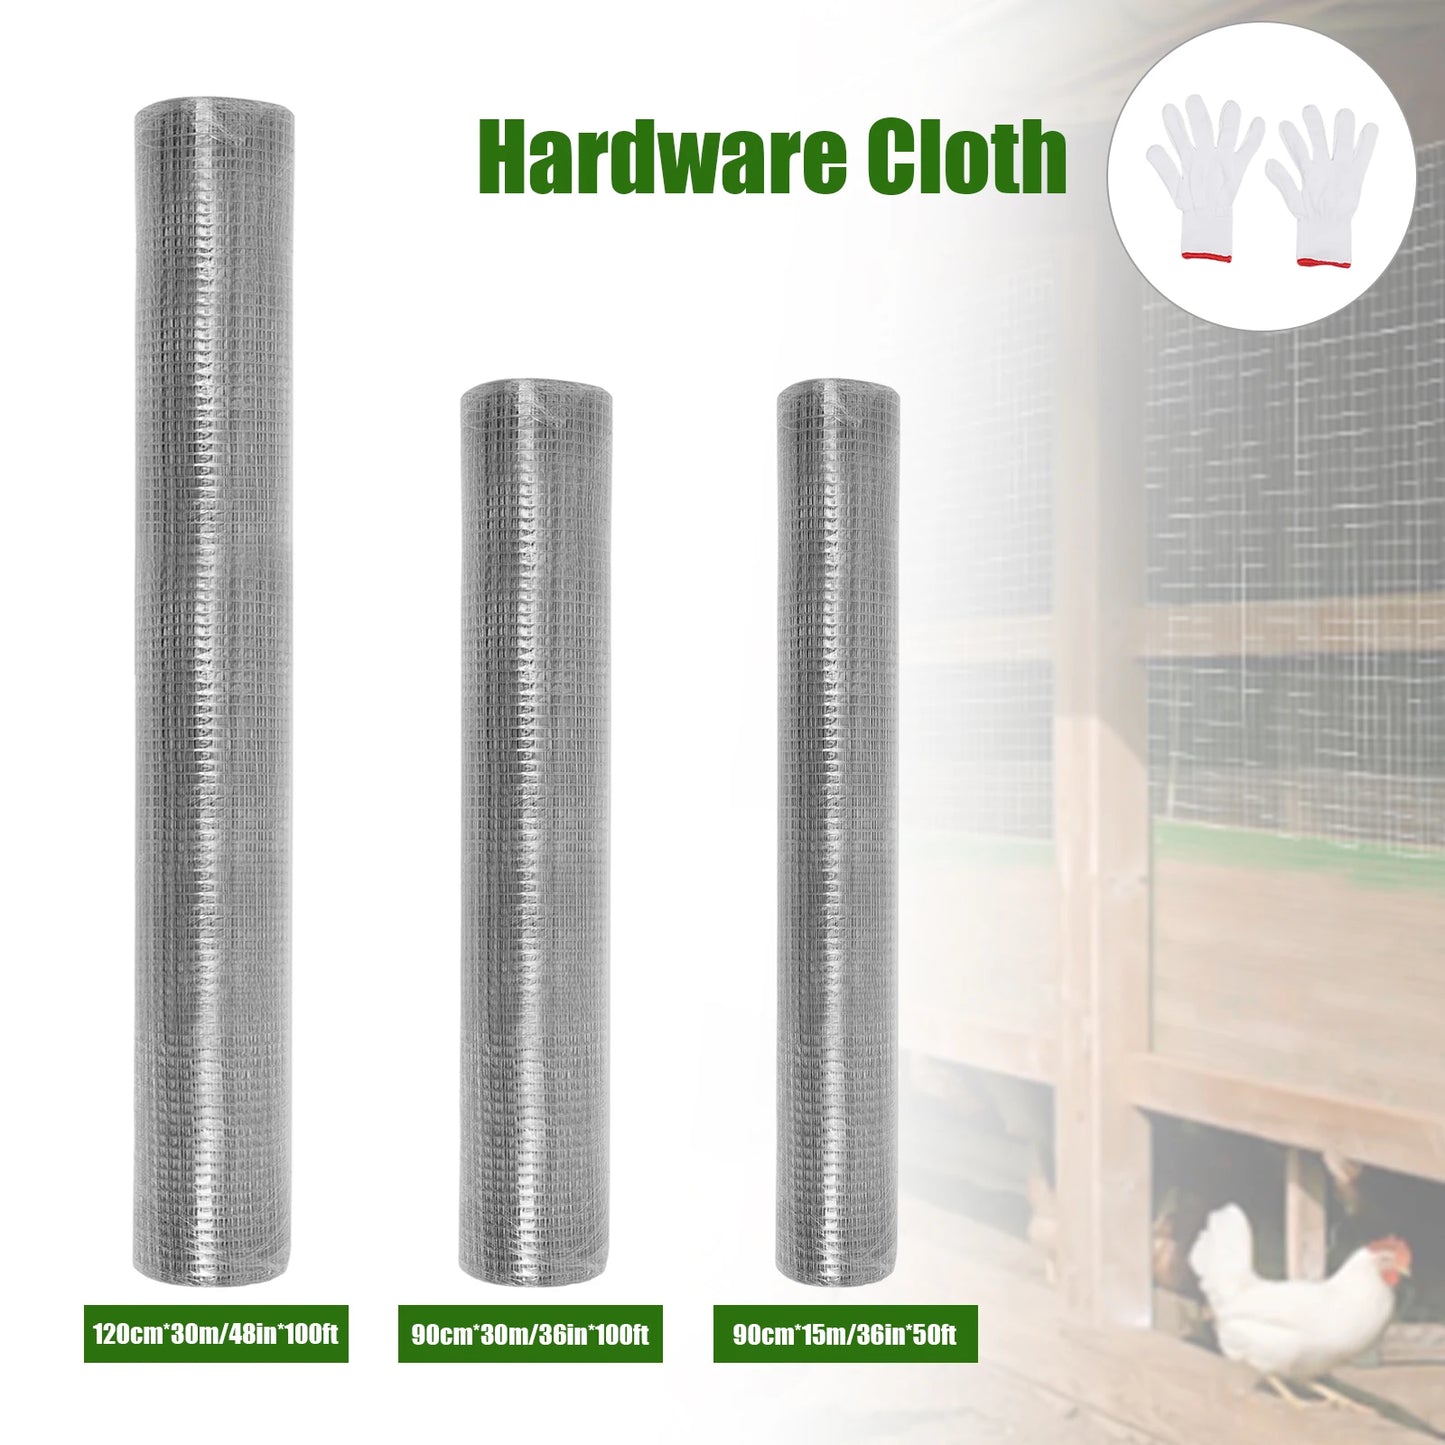 1/4 Inch Hardware Cloth Chicken Wire Fence Galvanized Welded